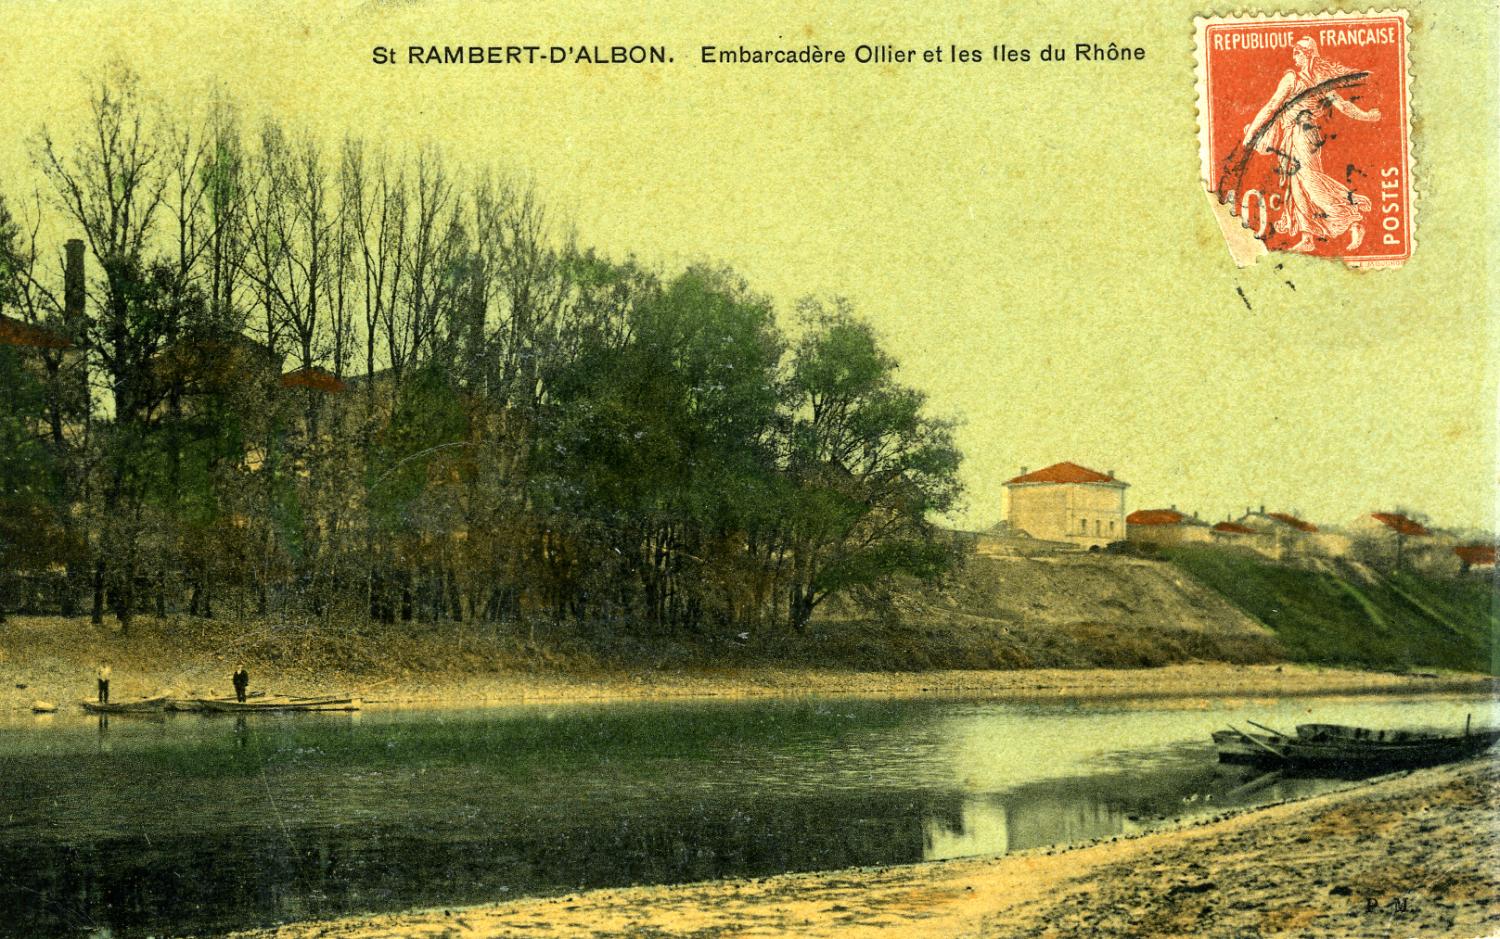 St Rambert-d'Albon